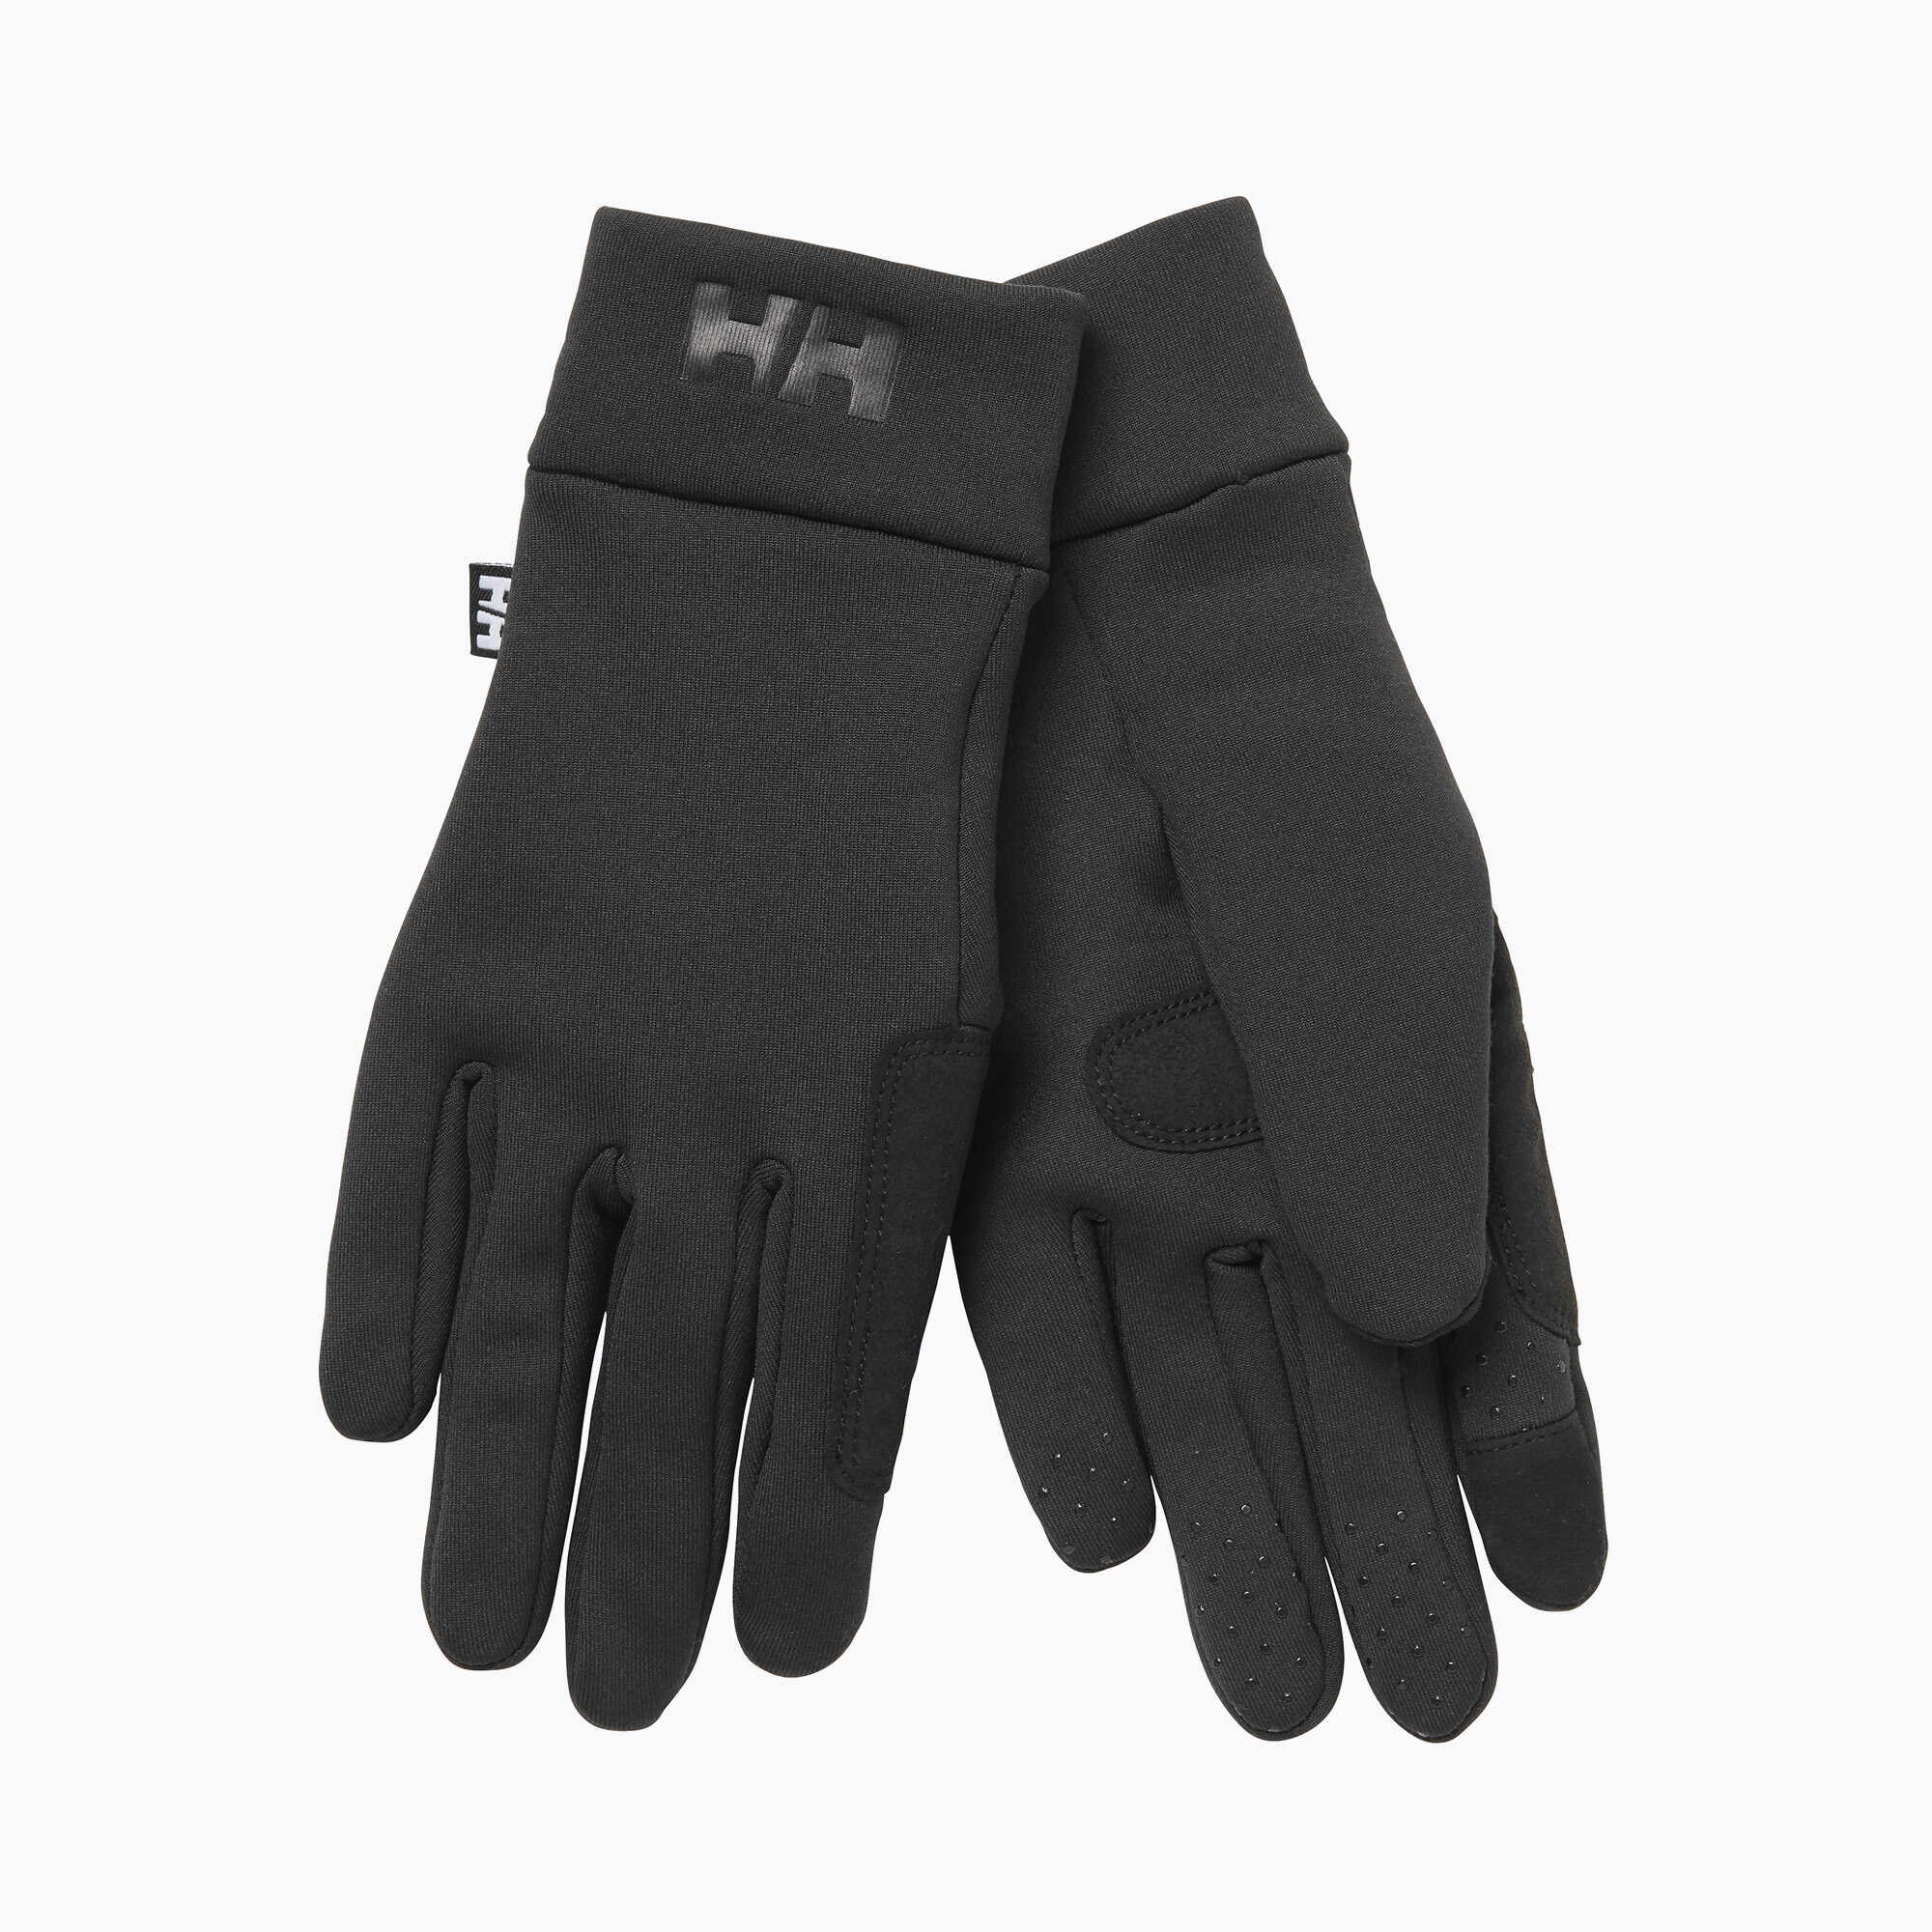 Rękawiczki Helly Hansen Touch Liner czarne 67332_990 WYSYŁKA W 24H 30 DNI NA ZWROT